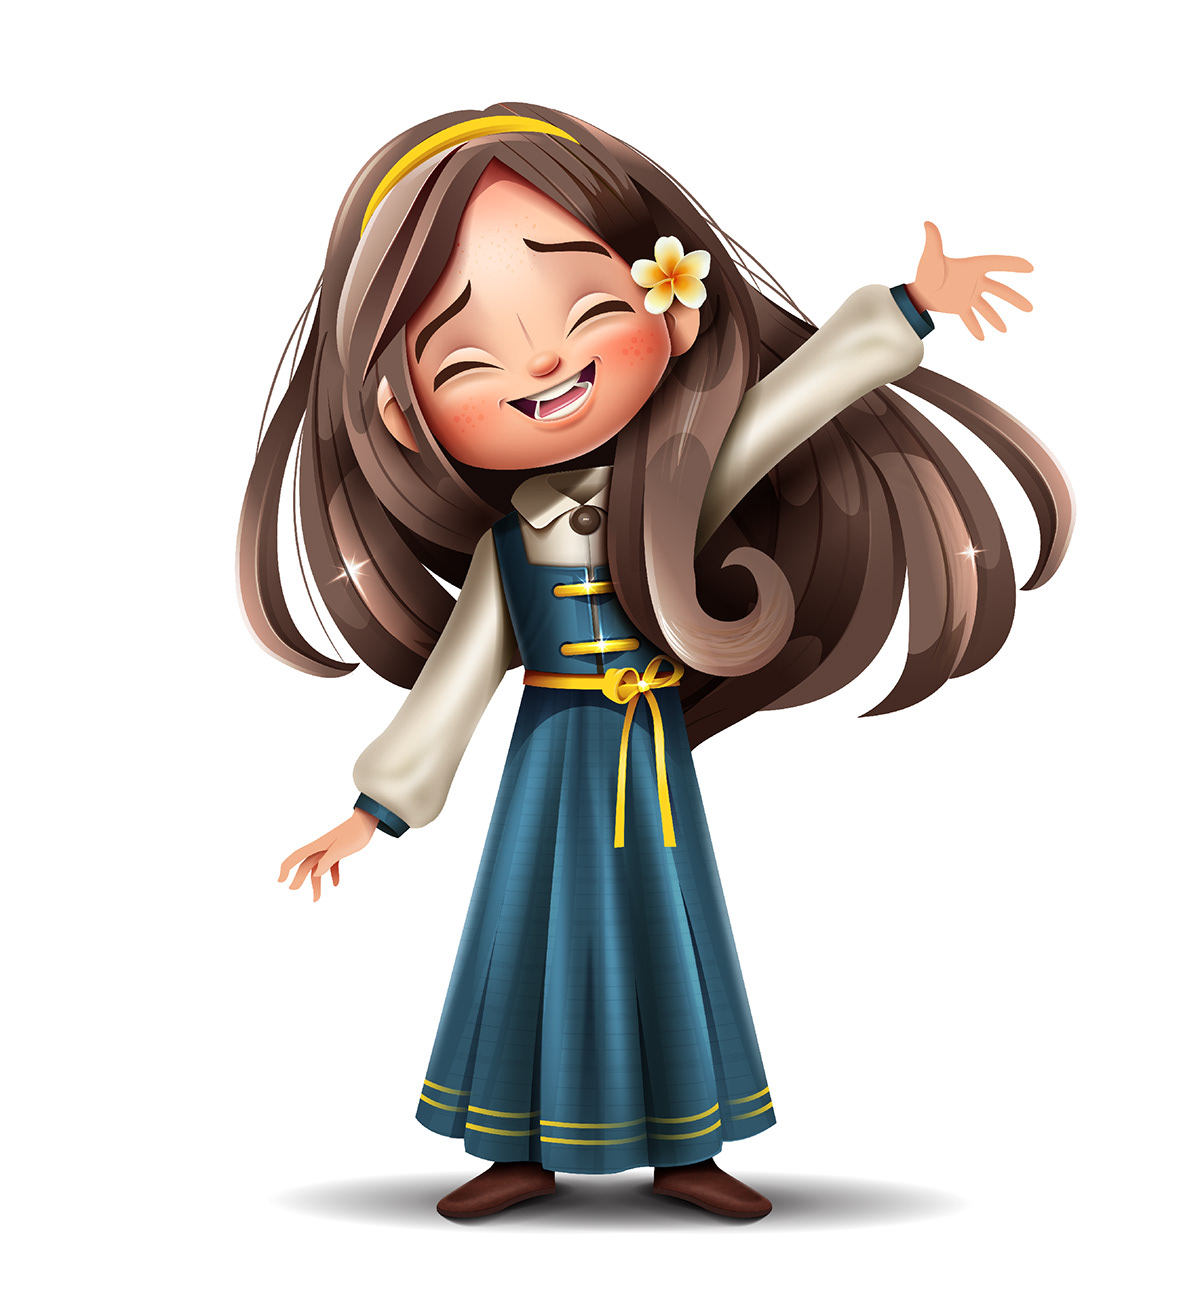 Arab kids serag basel vector art Character design  Muslim Kids Saudi Arabia Creative Character Hero Kids princess girl